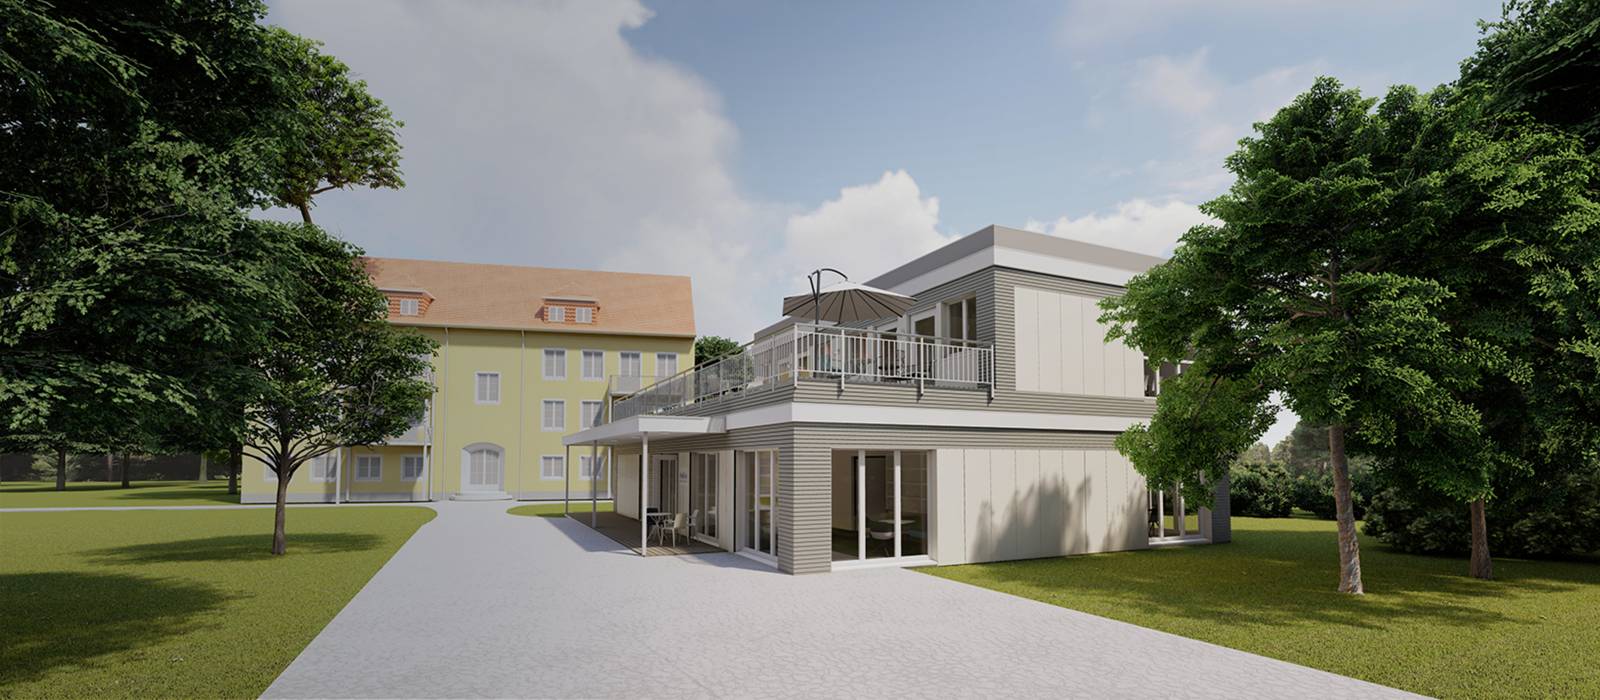 Erweiterungspläne des Klinikums Schloss Lütgenhof